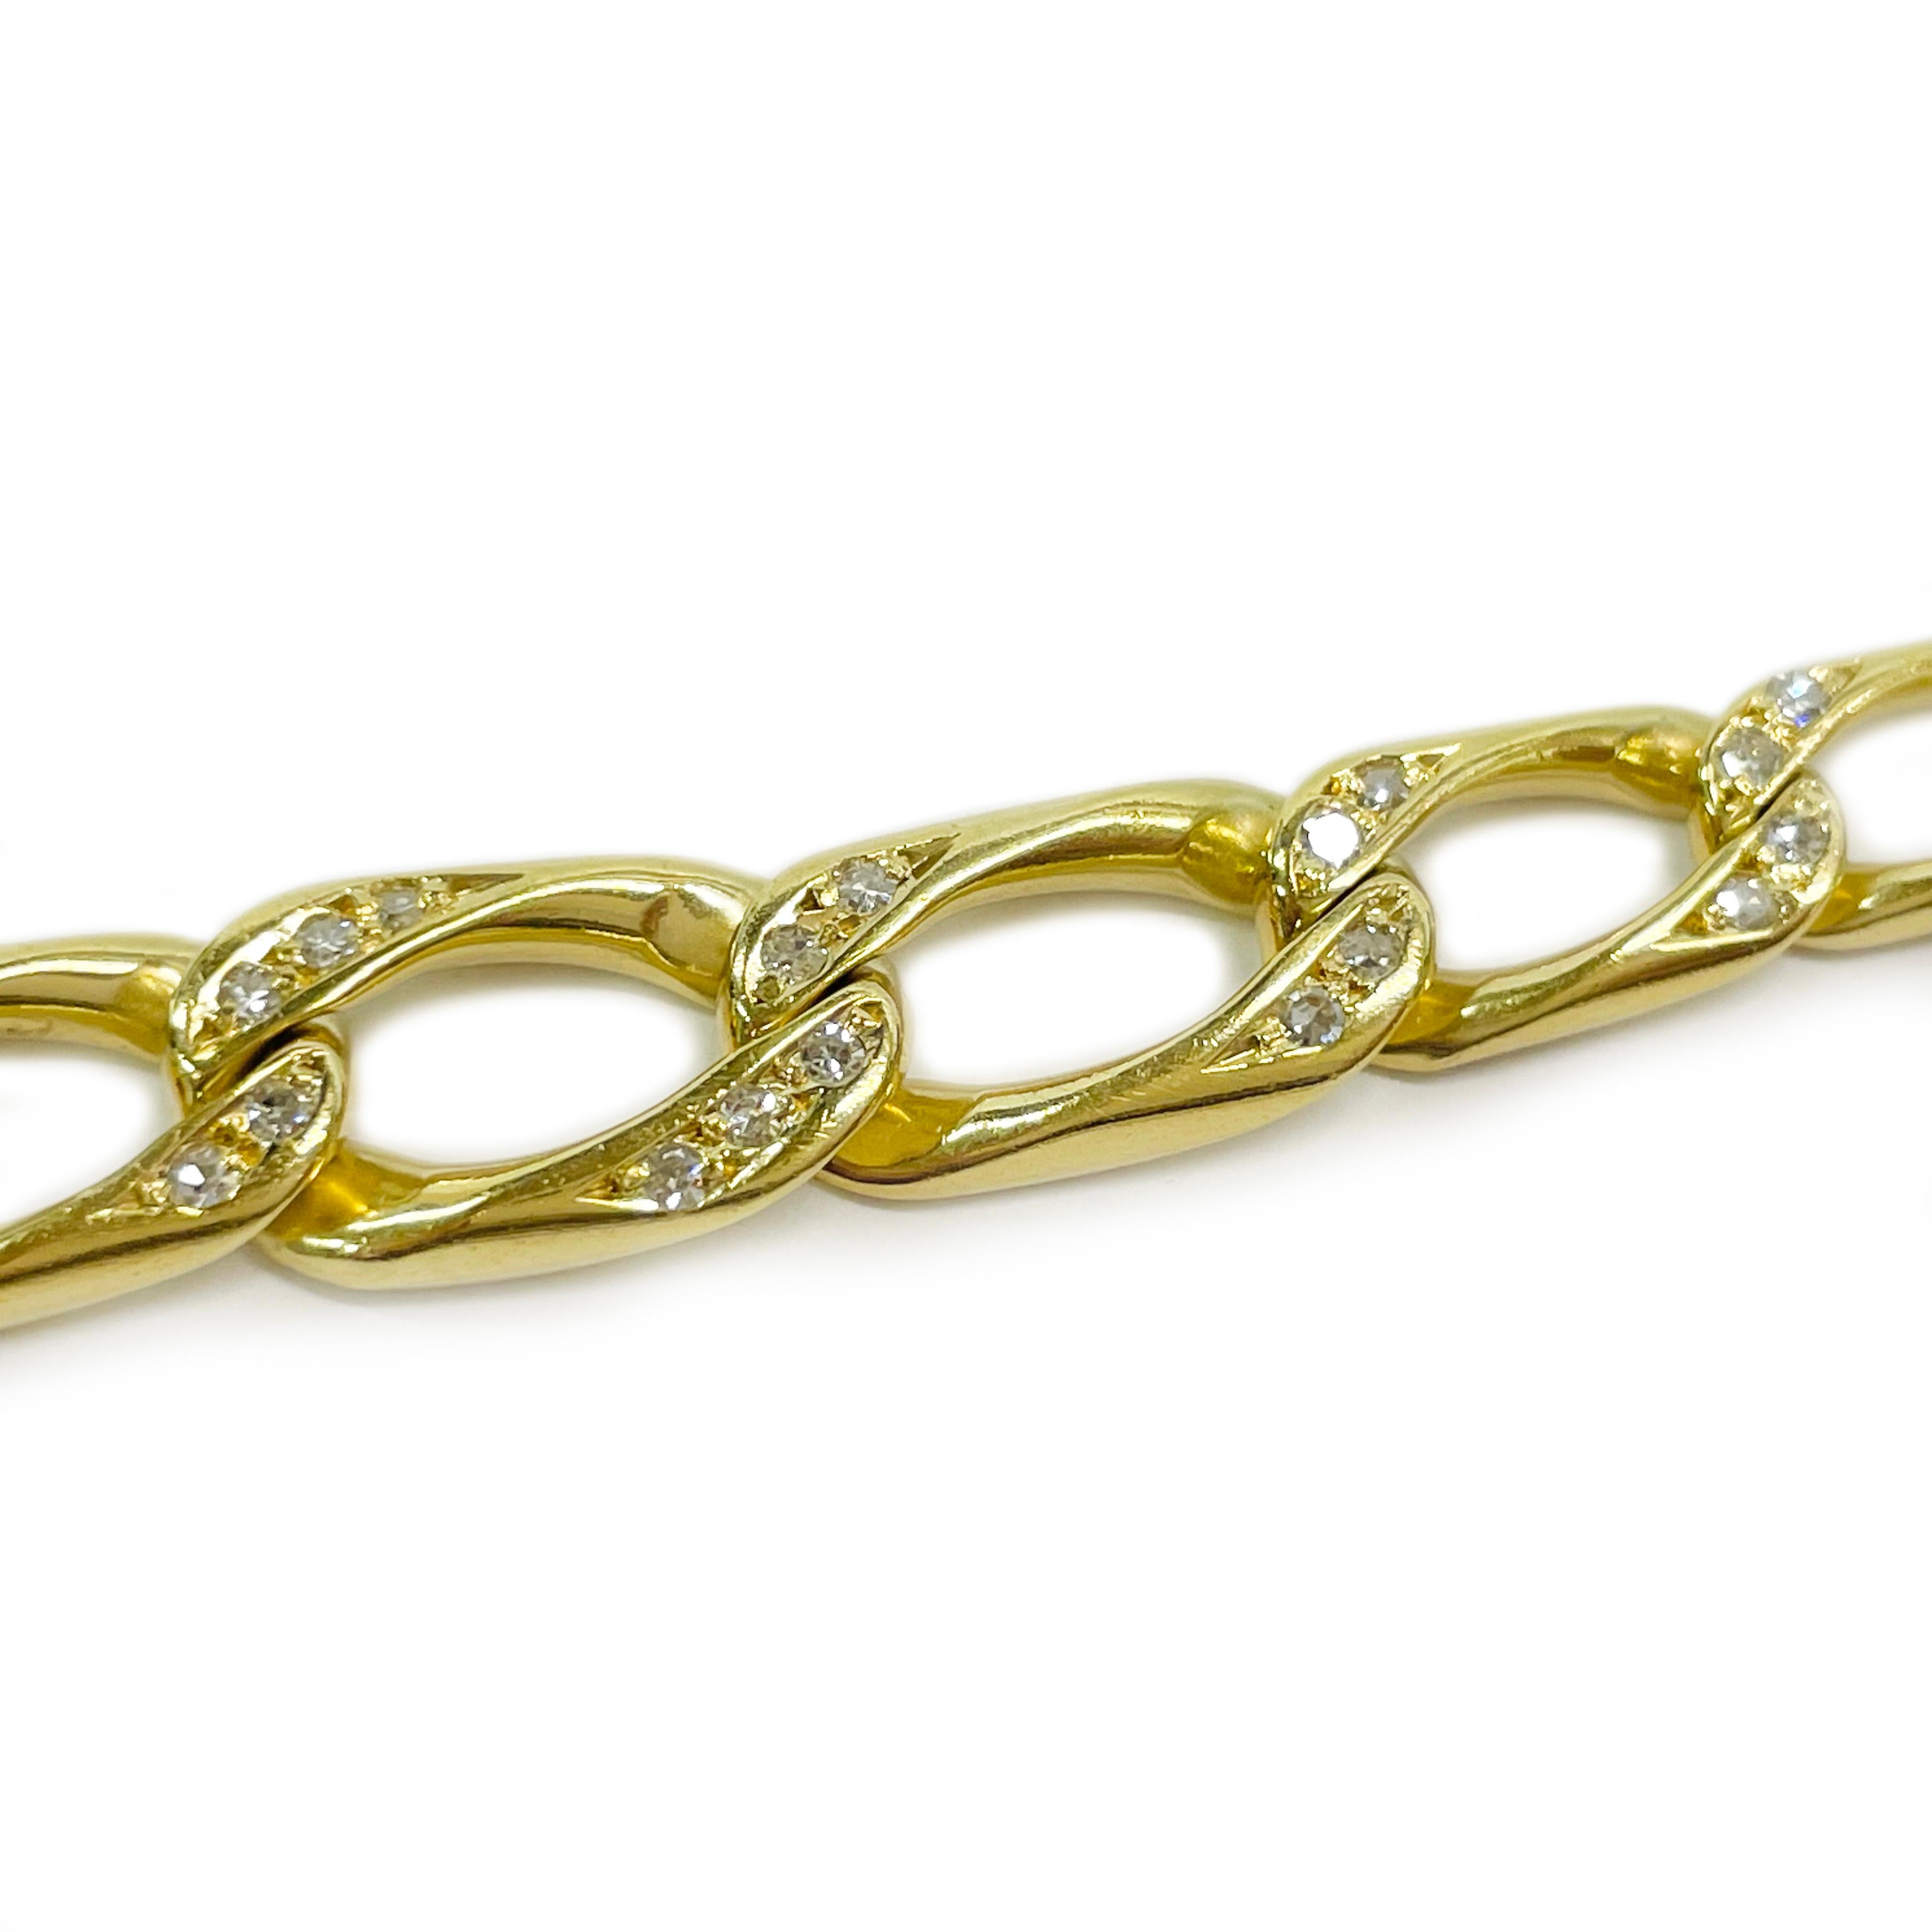 18 Karat Gelbgold Diamant Figaro Gliederarmband. Dieses Armband weist achtundzwanzig Diamanten im Einzelschliff auf, die in zwei Ecken der mittleren sieben Glieder eingefasst sind. Die Diamanten sind jeweils 1,72 mm groß und haben ein